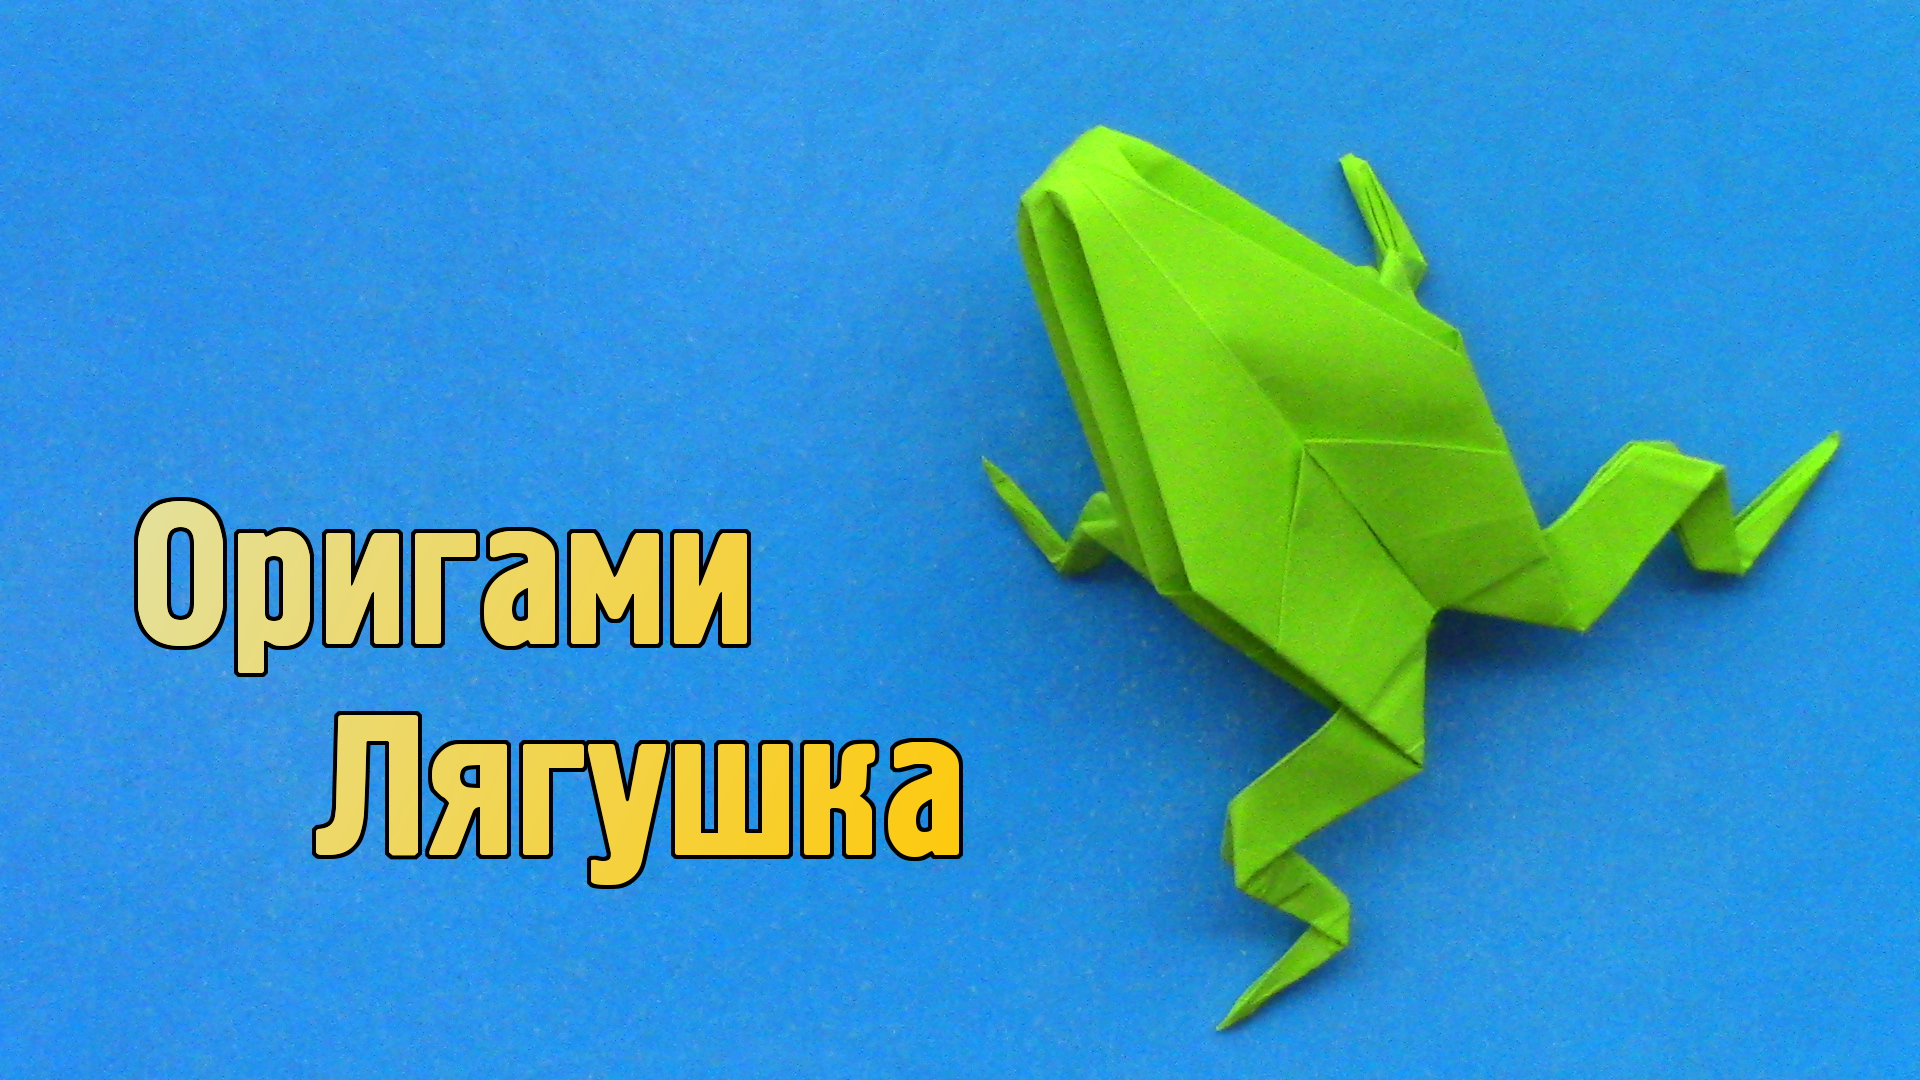 Как сделать Лягушку из бумаги | Оригами Лягушка своими руками без клея | Фигурка Животного для детей